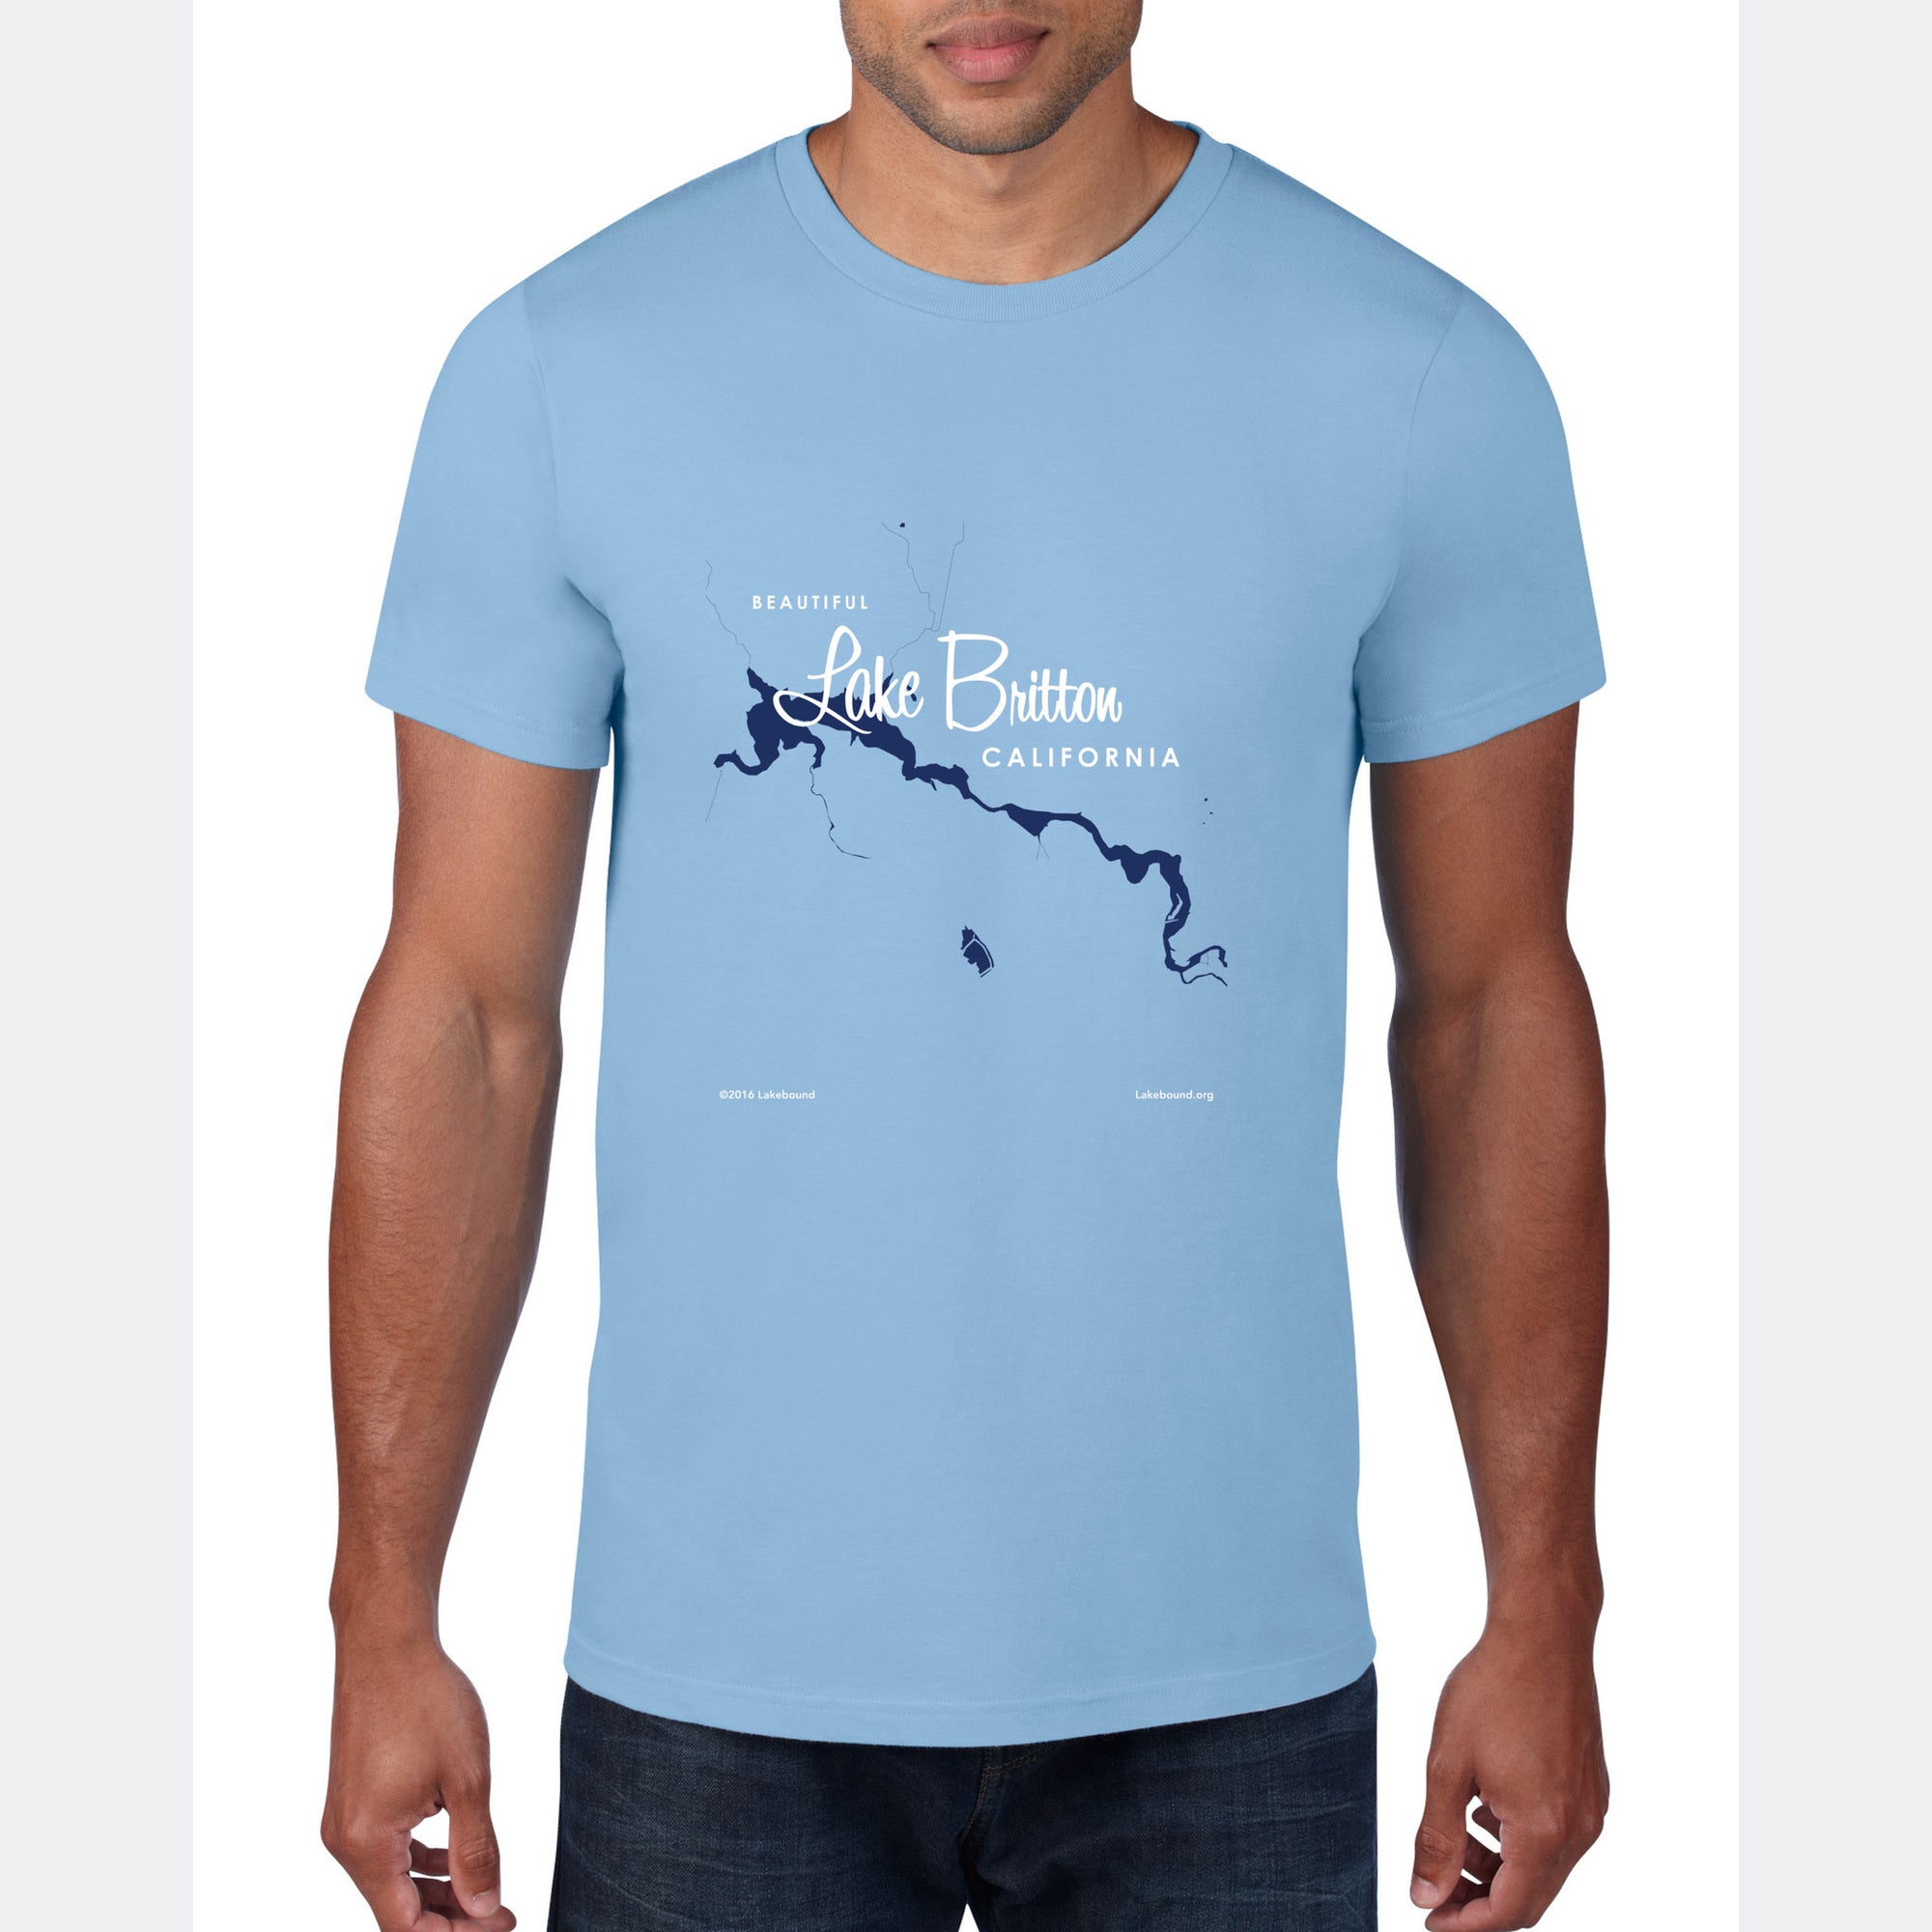 Lake Britton California, T-Shirt